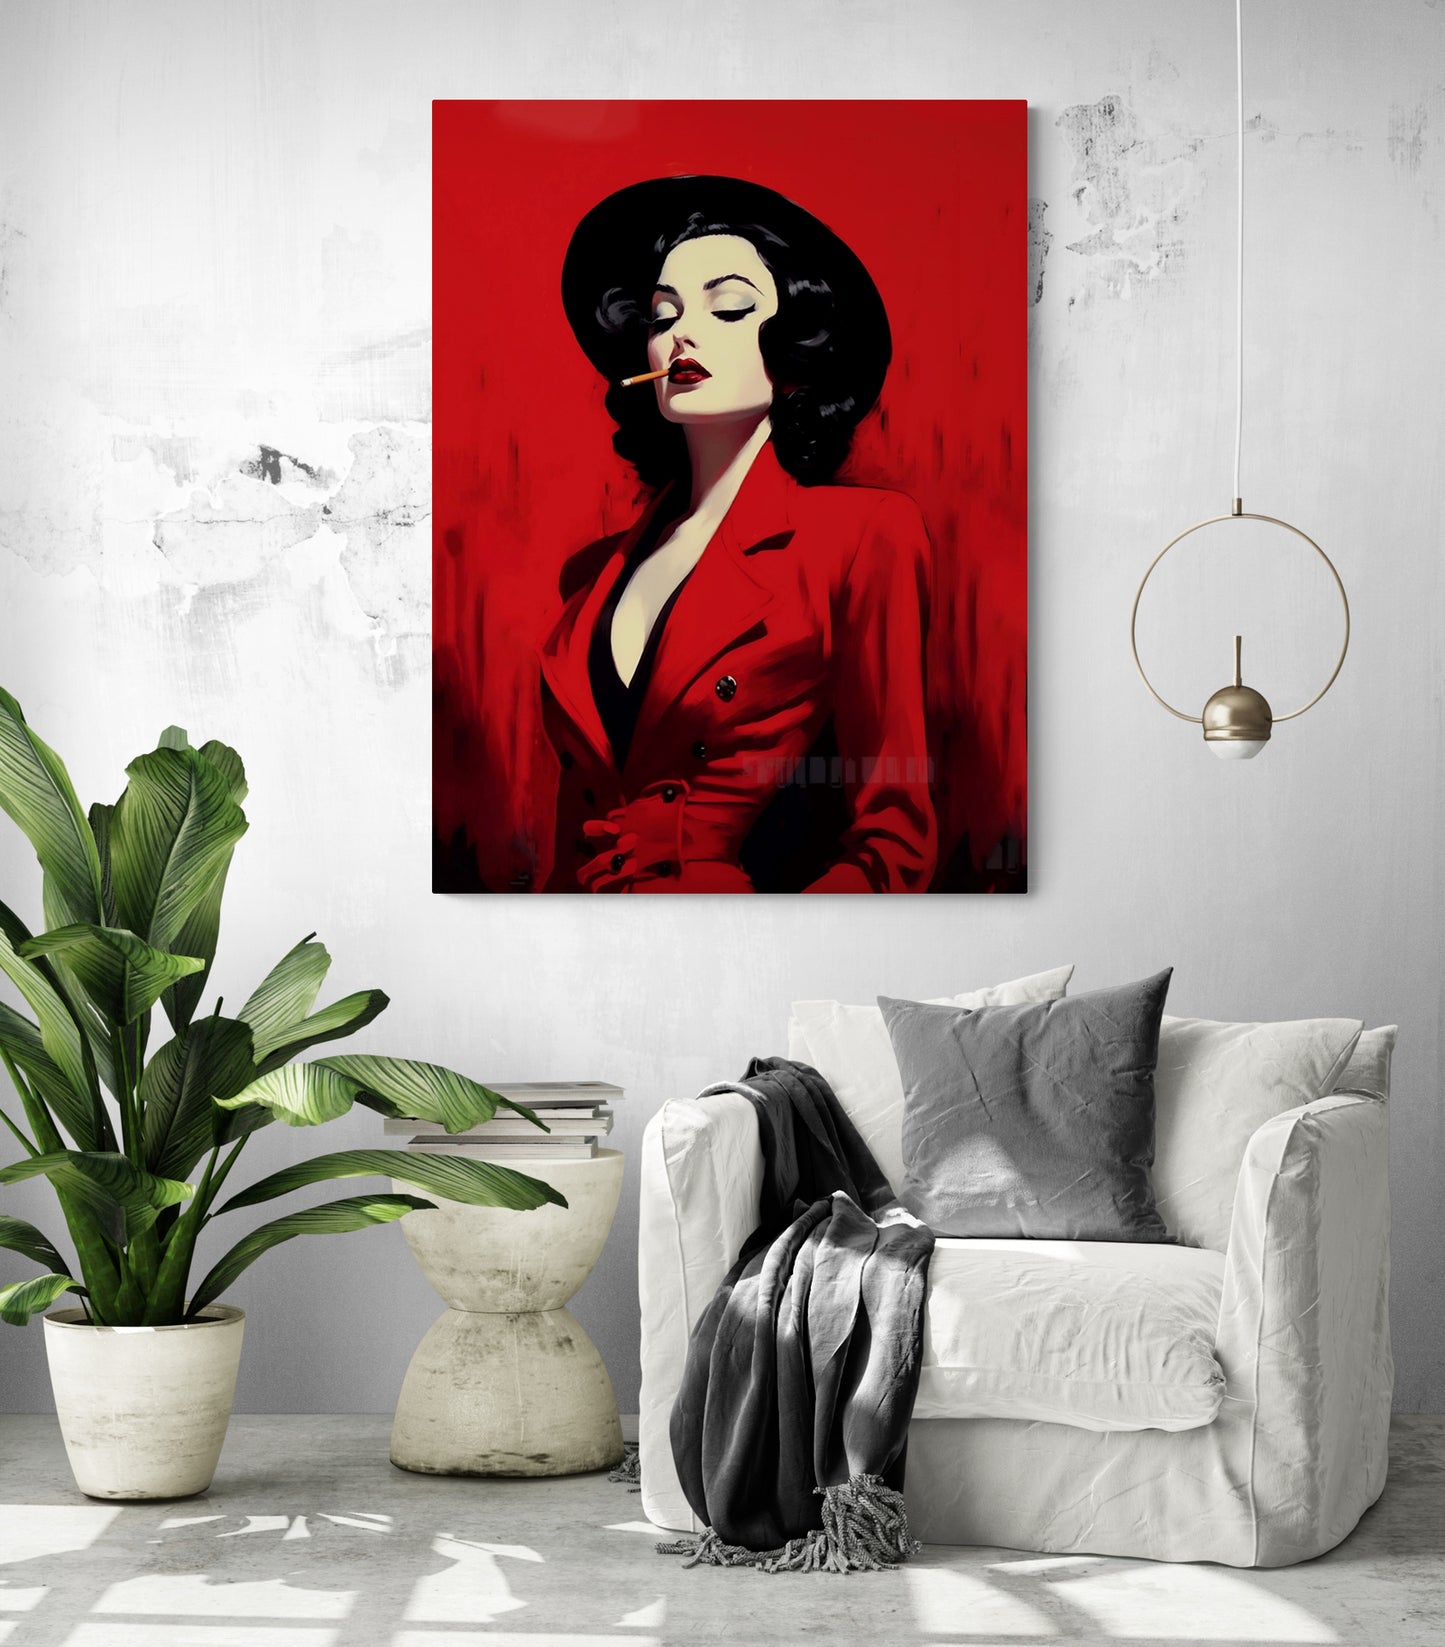 Dans un salon élégant, un tableau "Femme cigarette" est accroché, apportant une touche de charme rétro à cet espace de détente, accompagné d'un fauteuil blanc confortable.